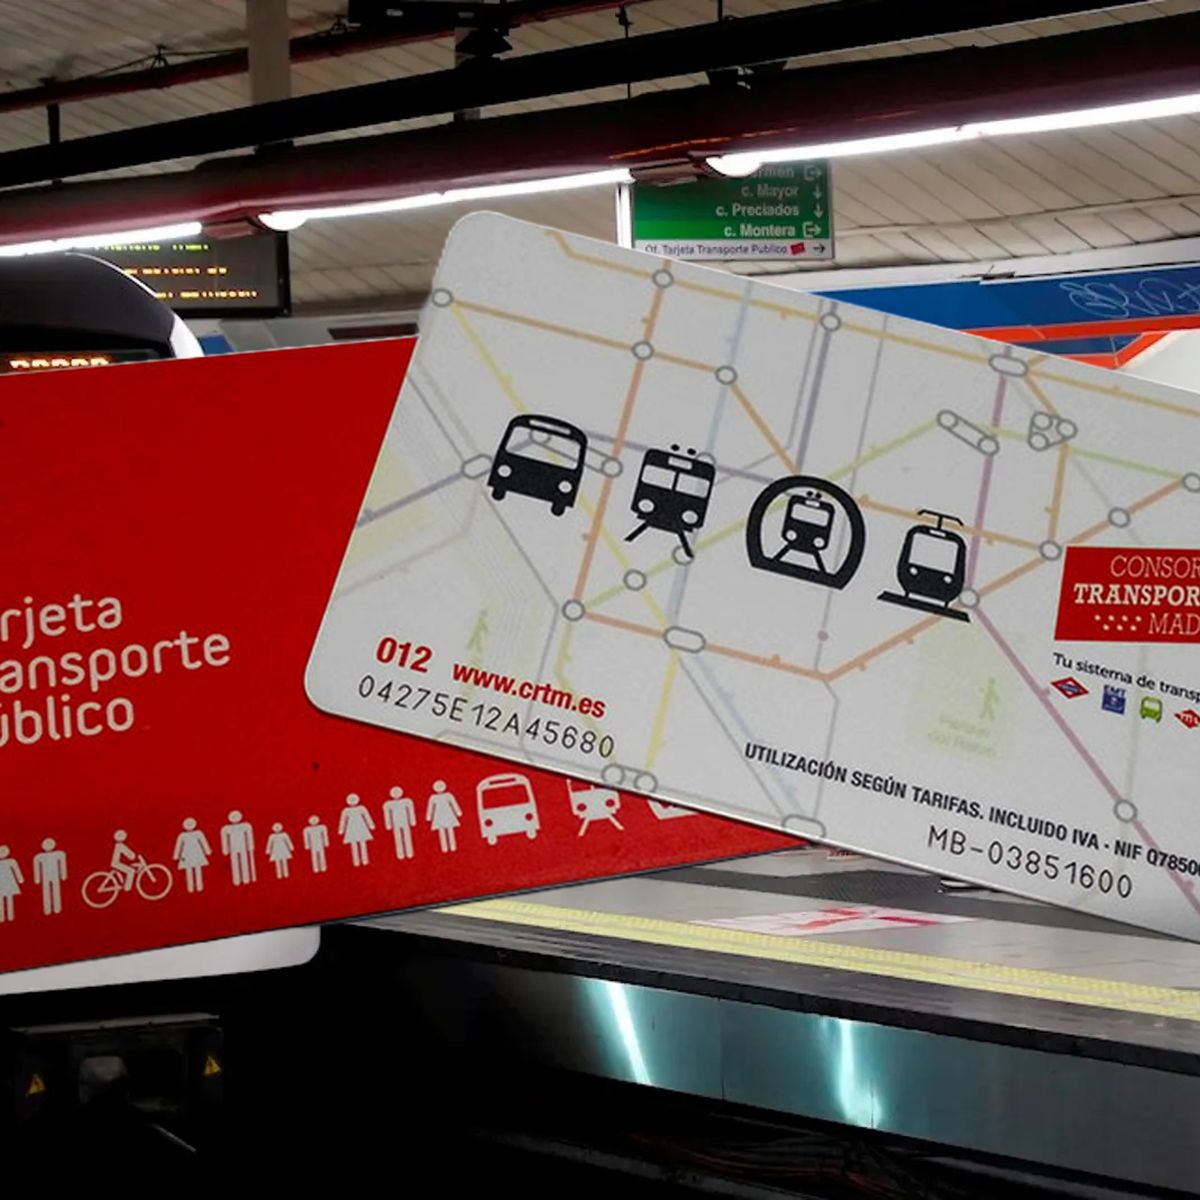 Metro de Madrid - 💡 IDEA: ahorra al comprar tu abono anual y benefíciate  de su precio reducido. 💰 ✓ Puedes adquirirlo en cualquier mes del año con  un precio proporcional. Info